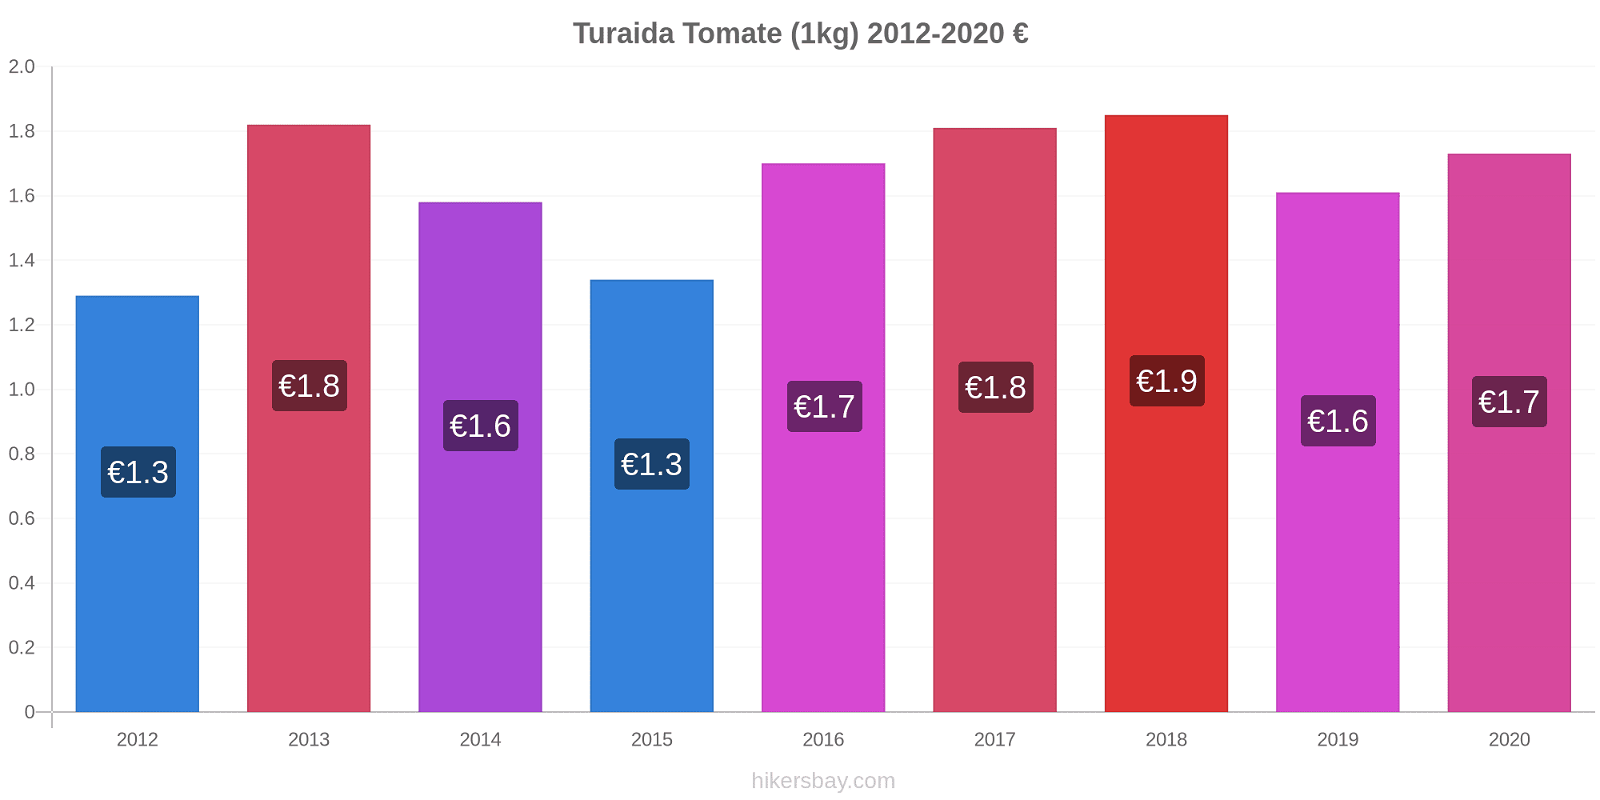 Turaida variação de preço Tomate (1kg) hikersbay.com